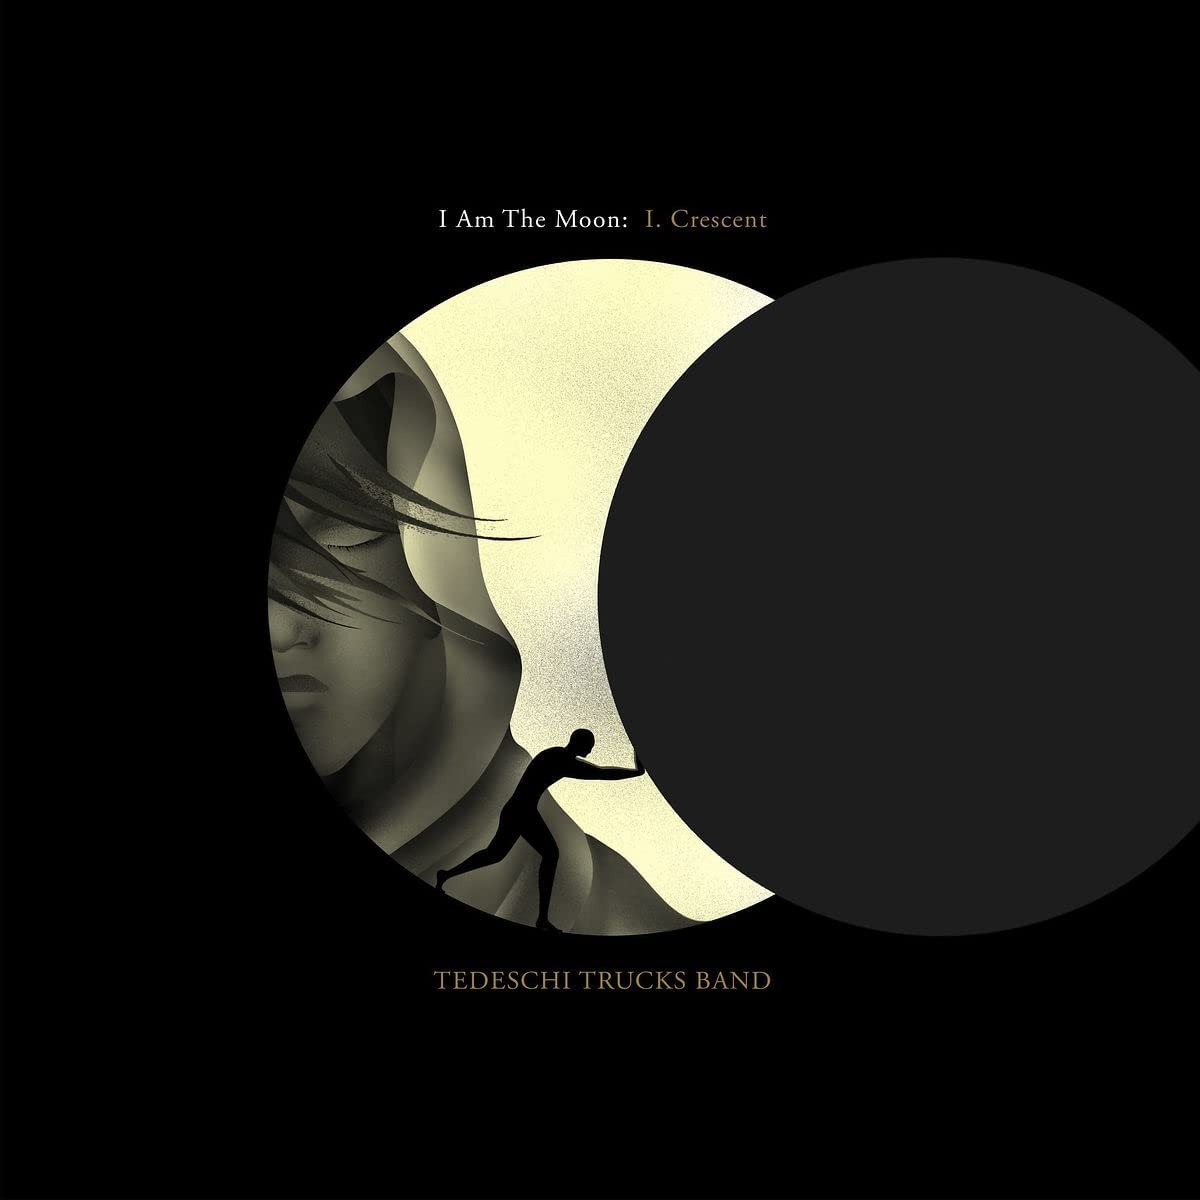 TEDESCHI TRUCKS BAND - I Am The Moon: I. Crescent - LP - Vinyl